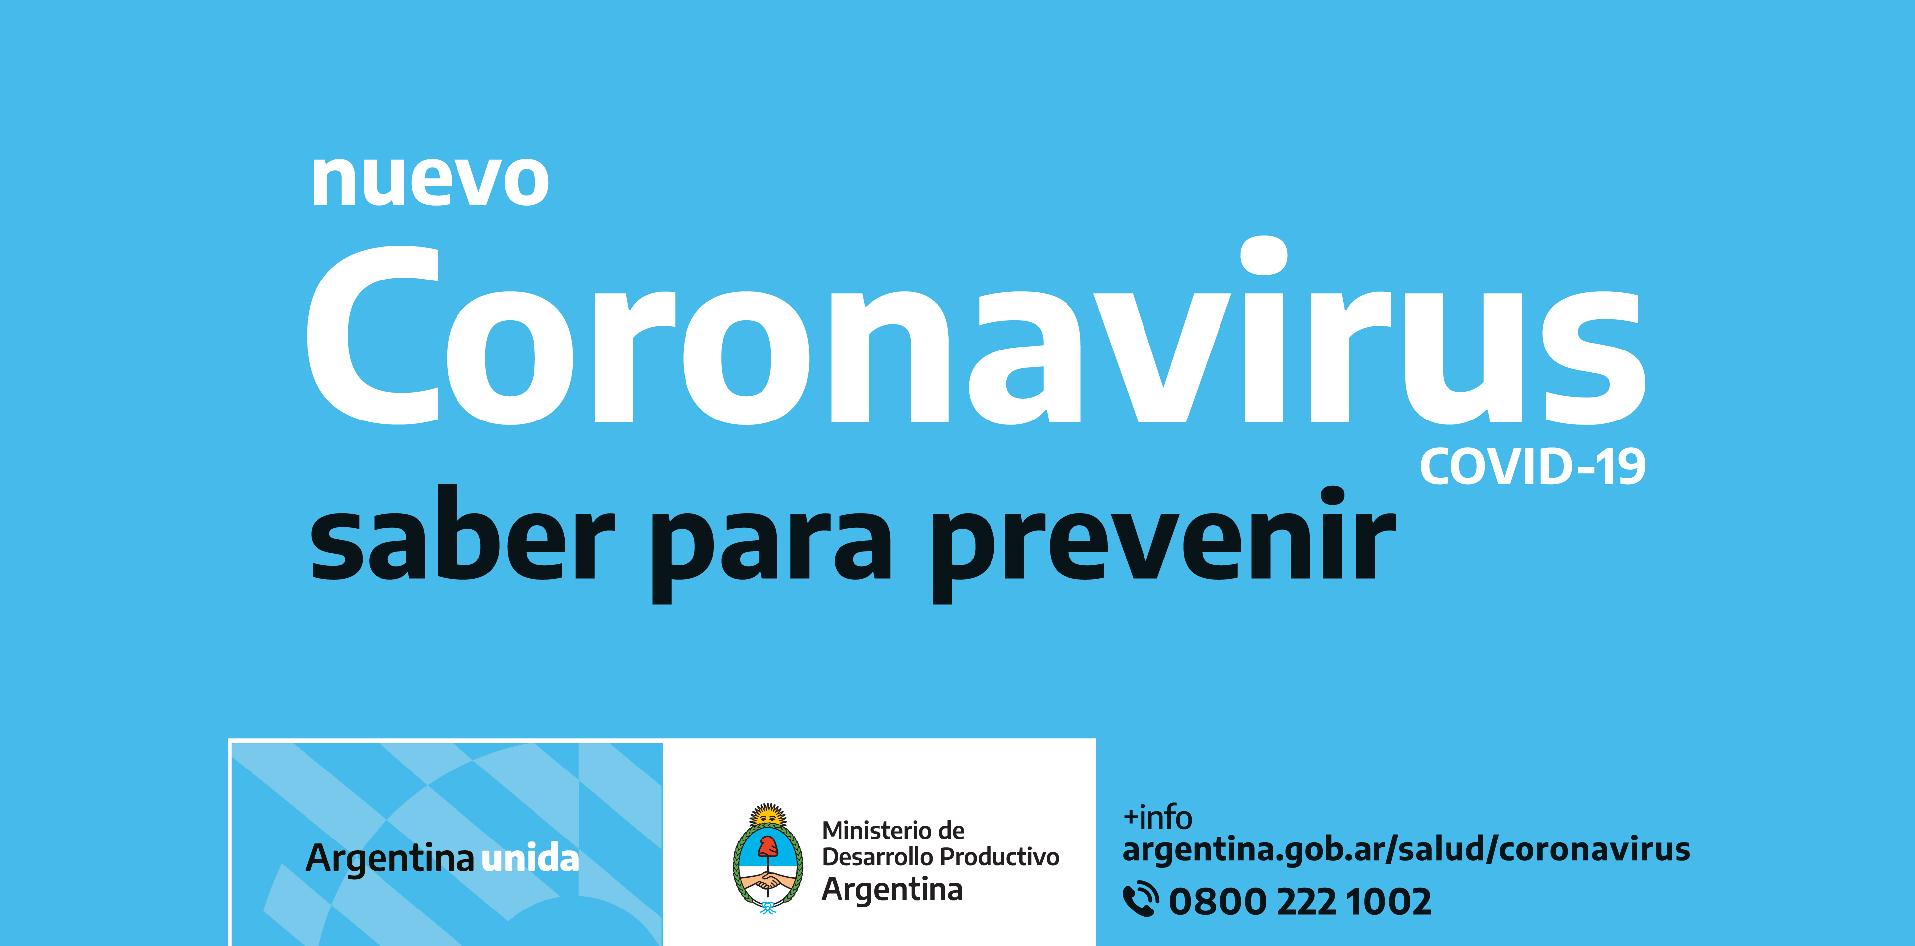 INTI, Ministerio de Desarrollo Productivo, Coronavirus, COVID-19, Argentina